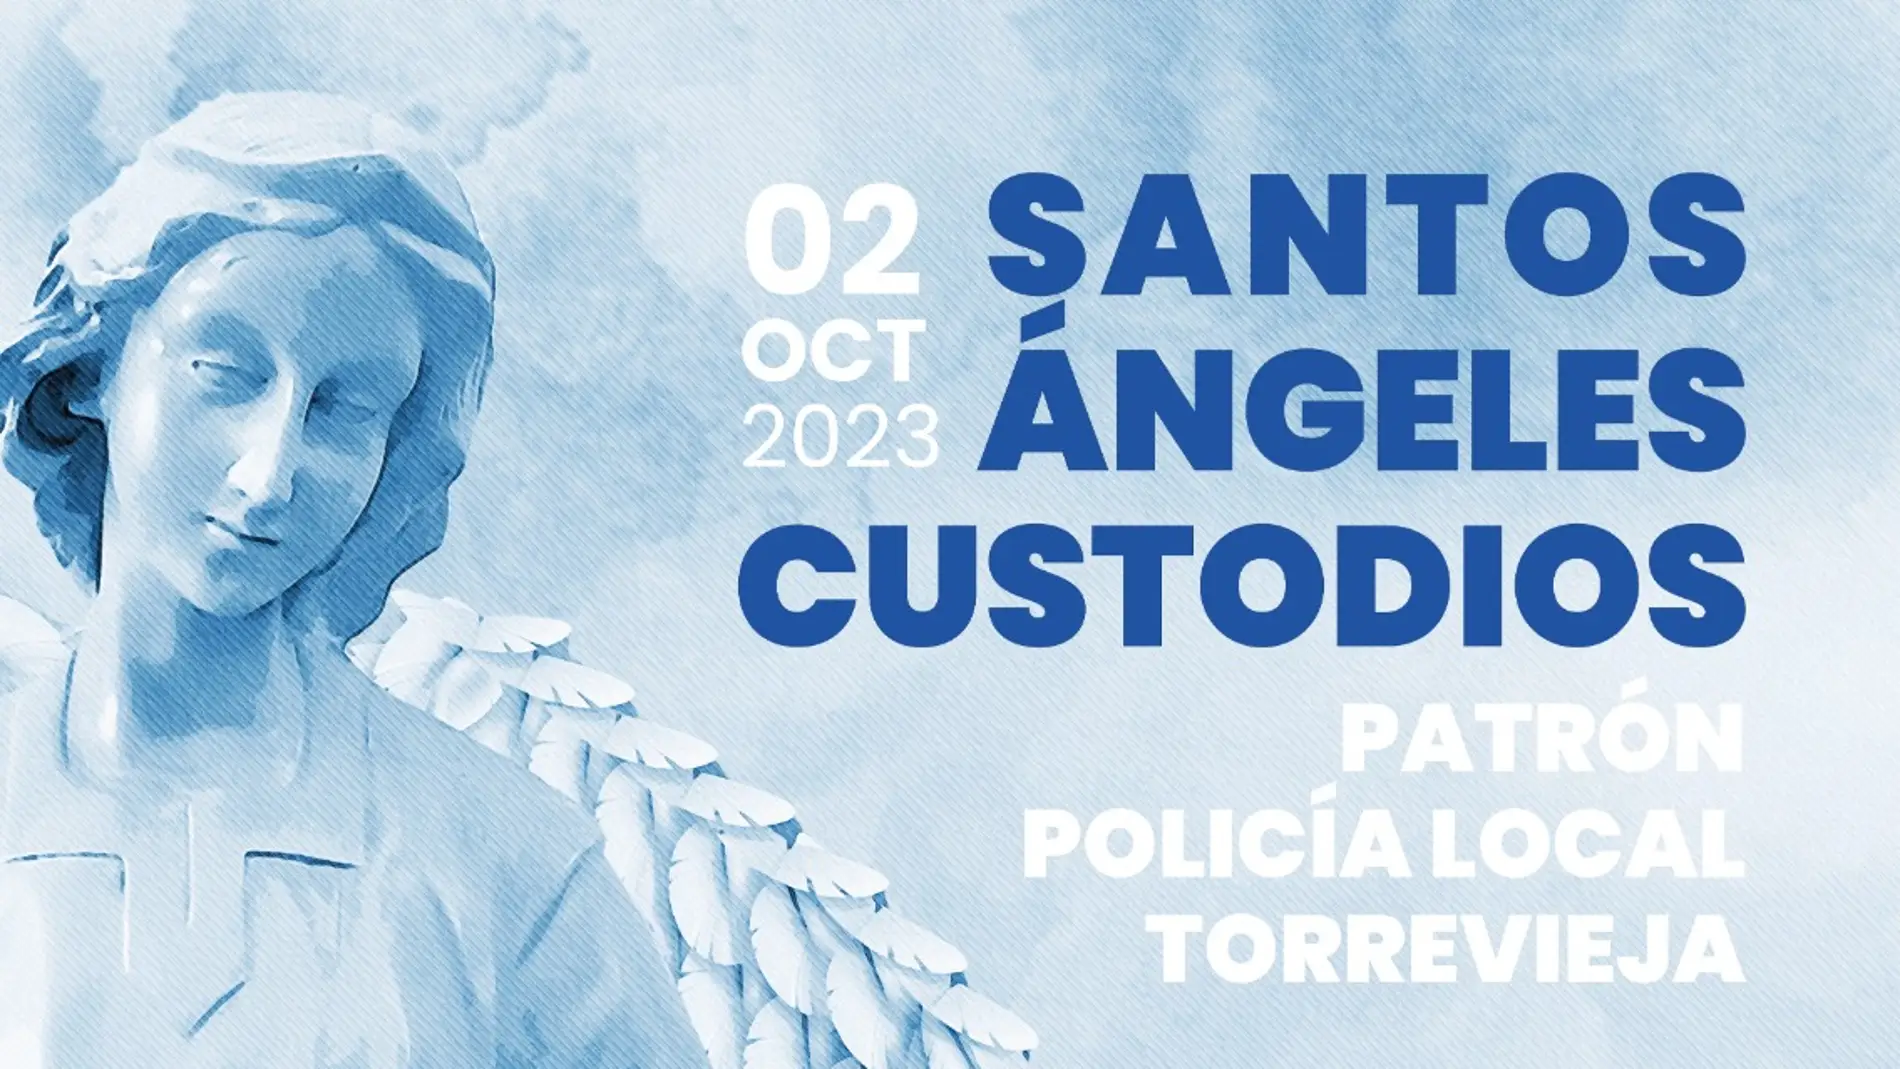 Este lunes 2 de octubre es el patrón de la Policia Local "Los angeles custodios" 